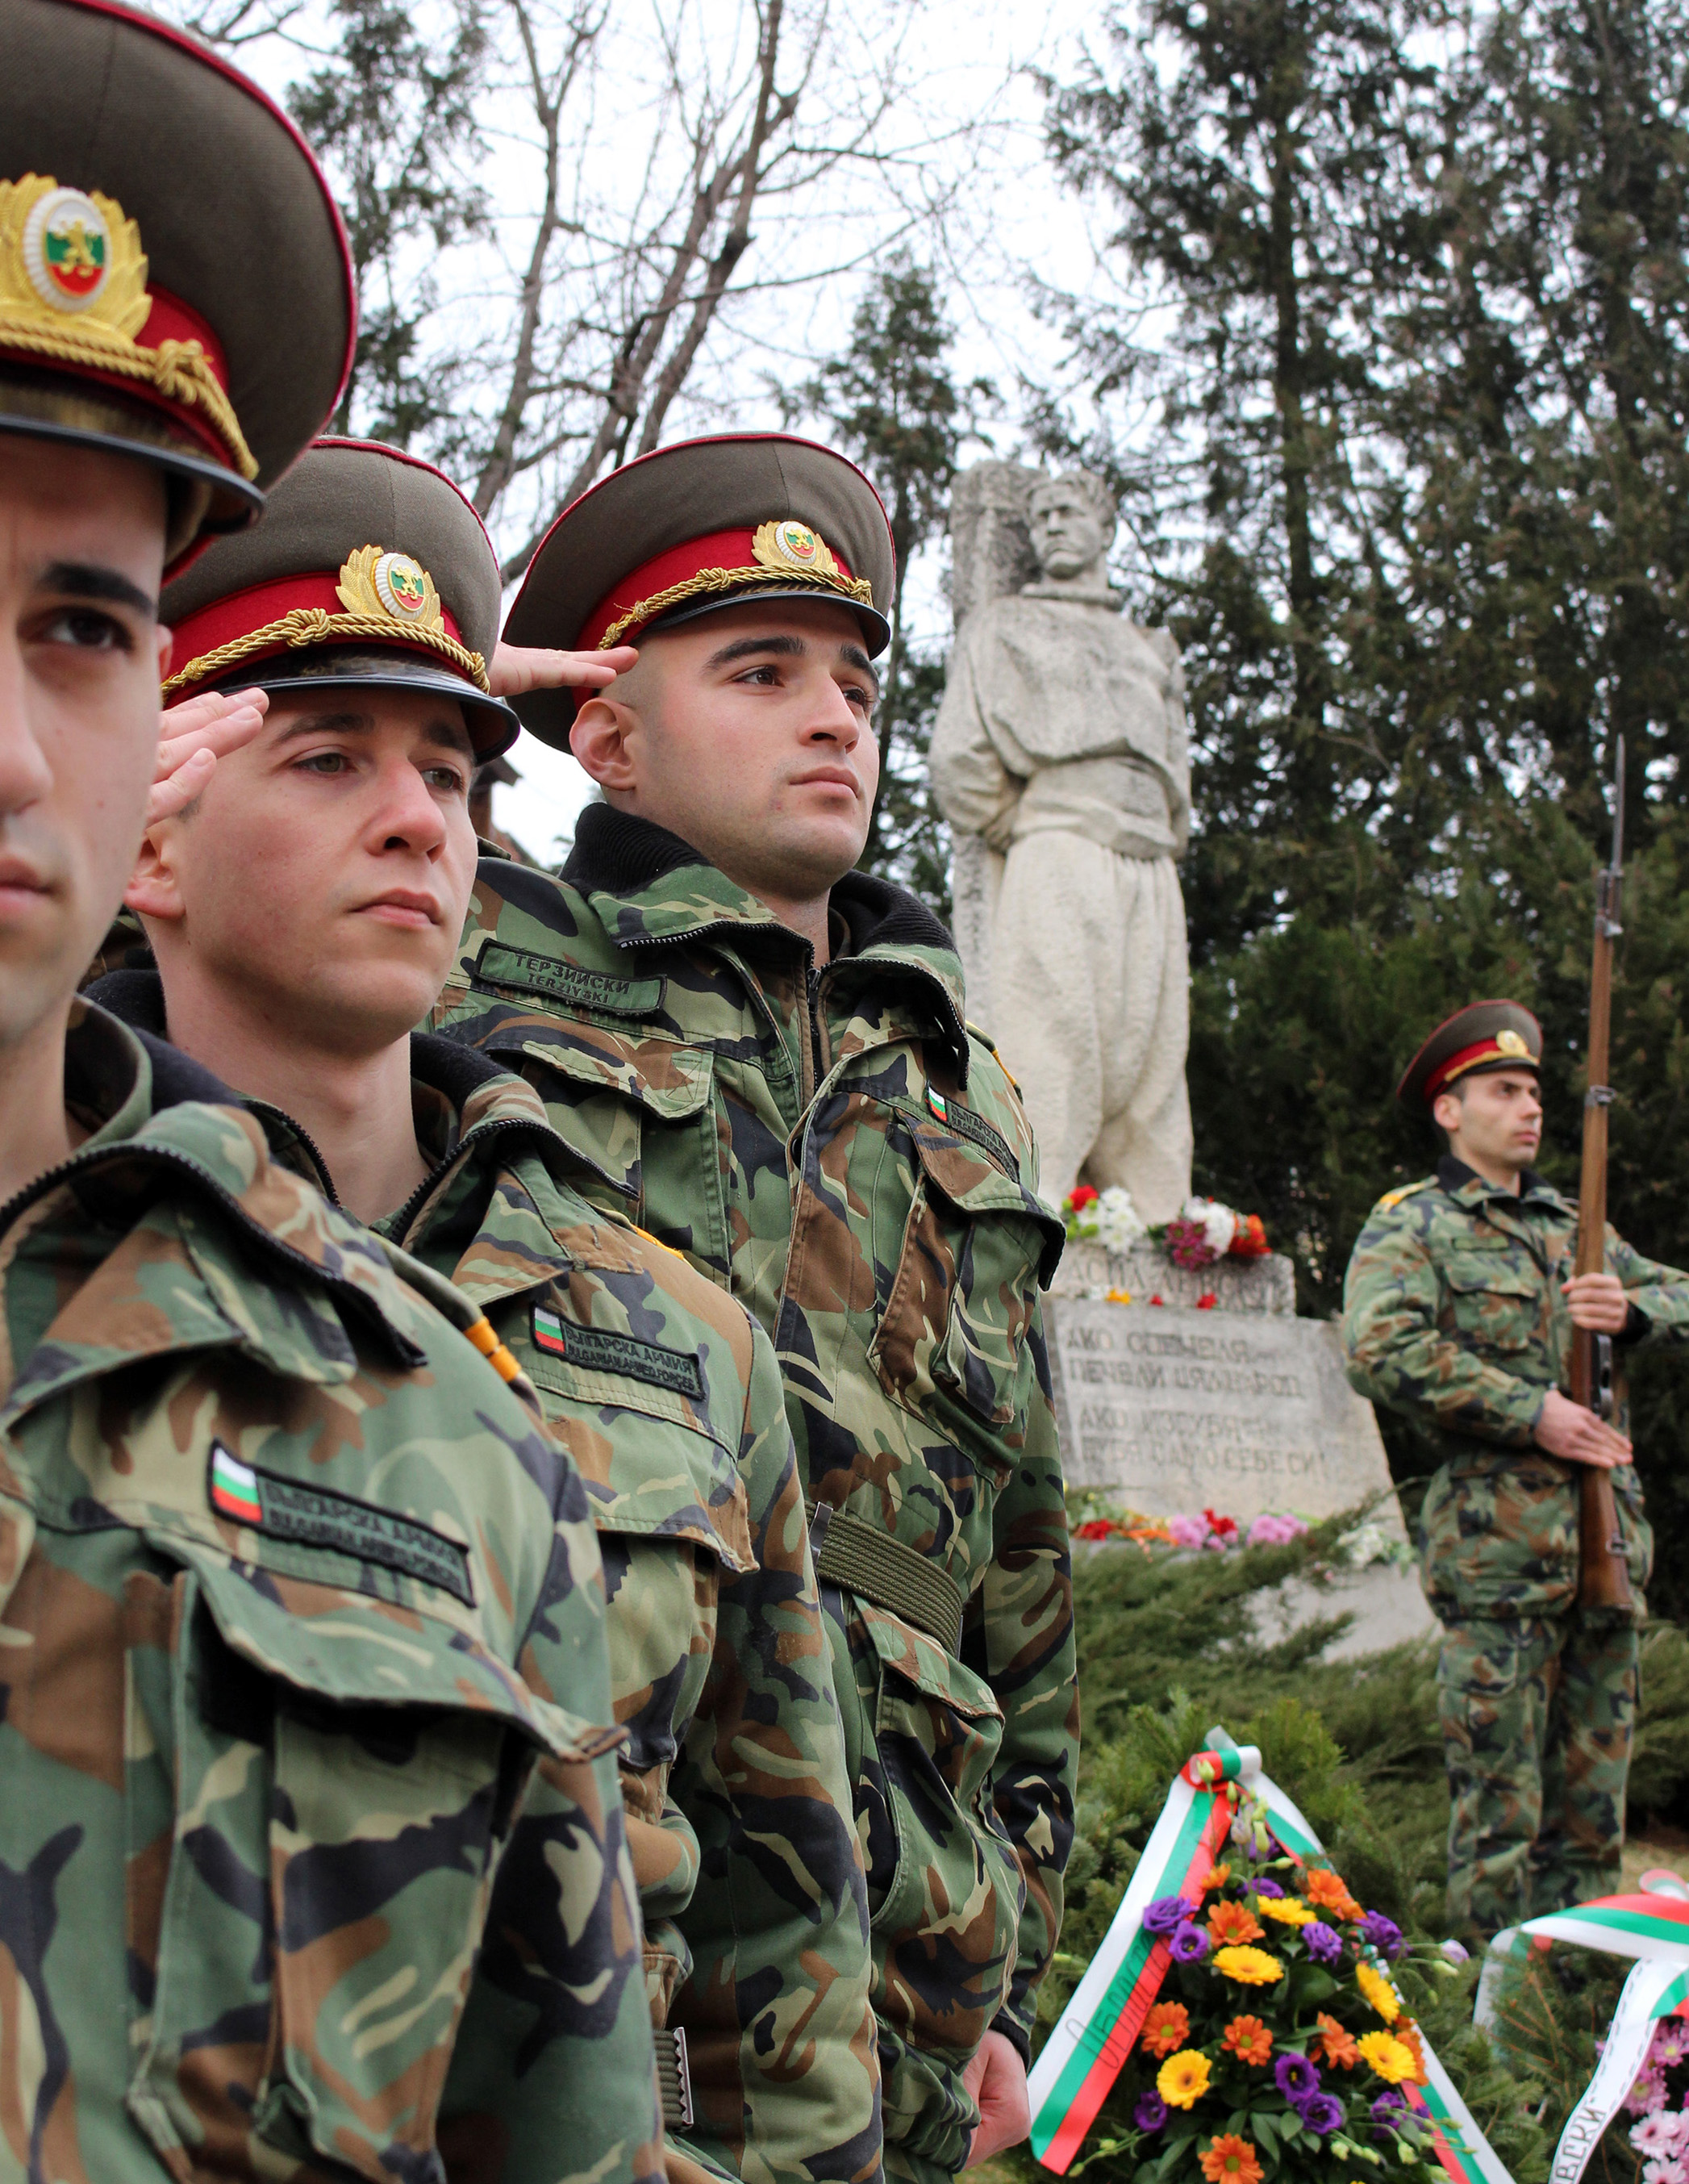 Във Велико Търново годишнината беше почетена с военен ритуал, поднасяне на венци и цветя пред паметника на Васил Левски